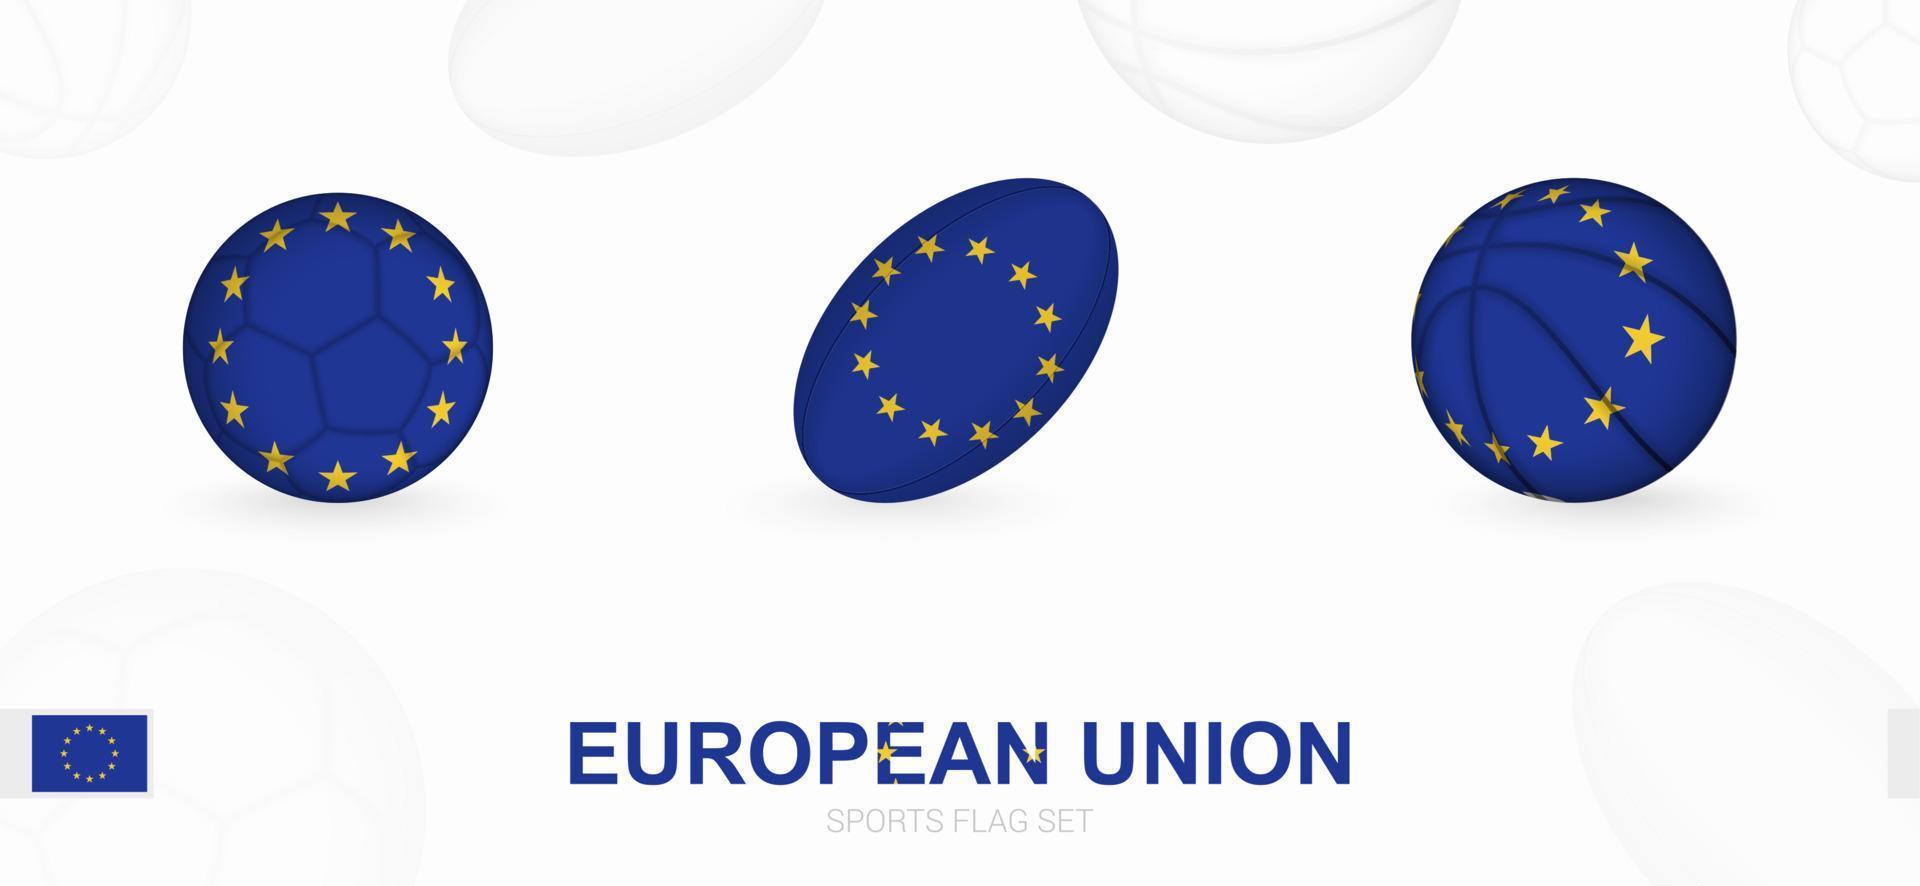 Esportes ícones para futebol, rúgbi e basquetebol com a bandeira do europeu União. vetor